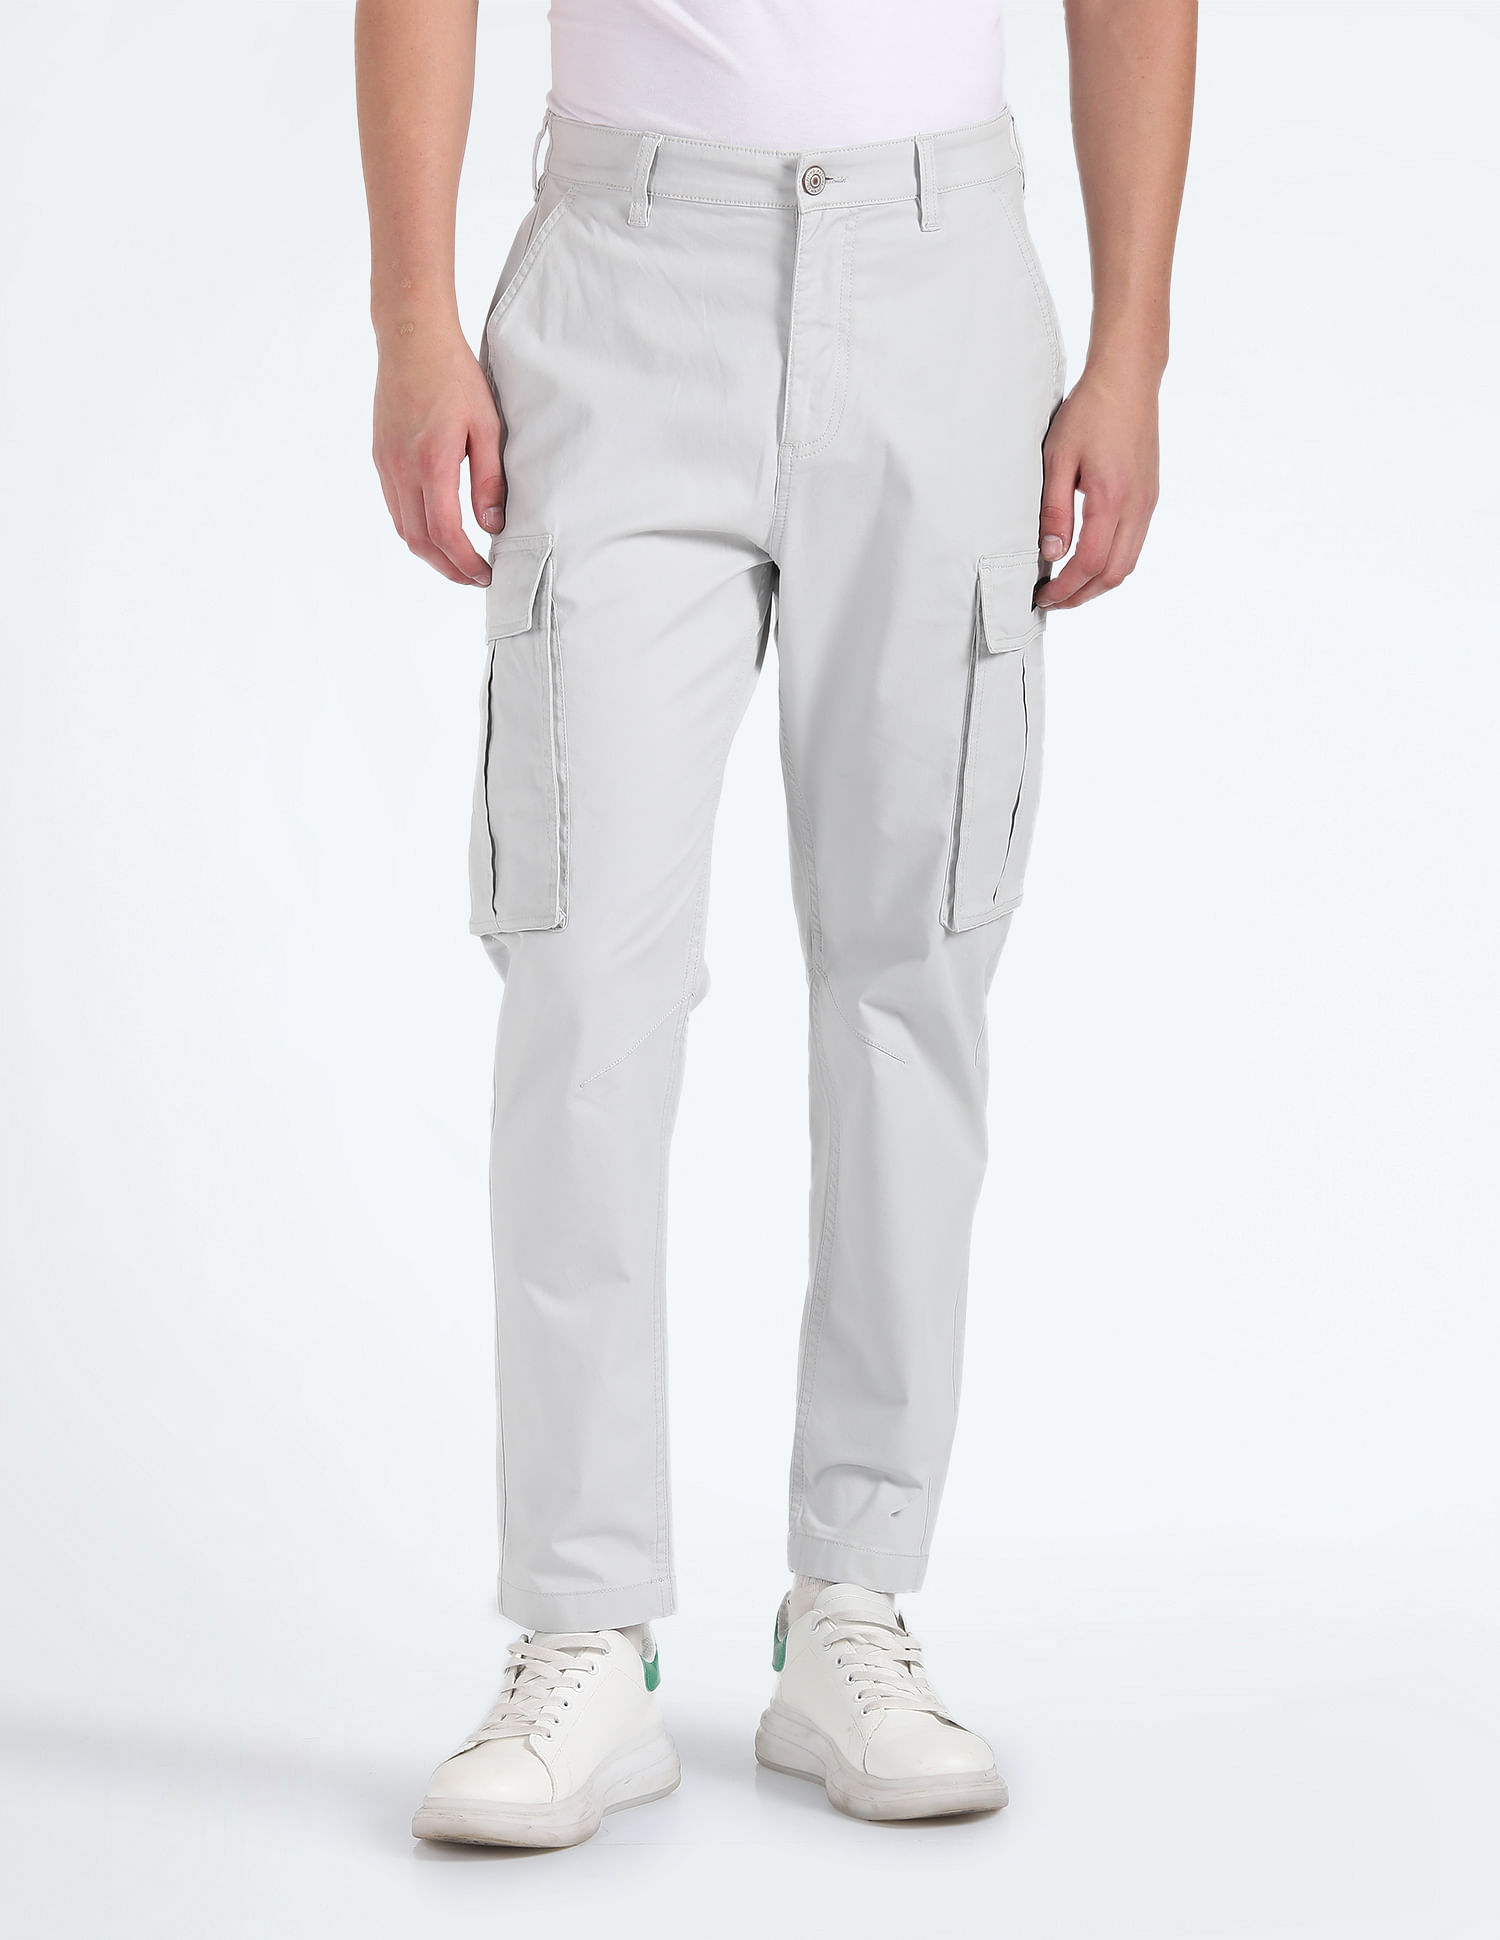 Women's white Cargo Pants | Cargo Trousers Pants for Women | ZALANDO